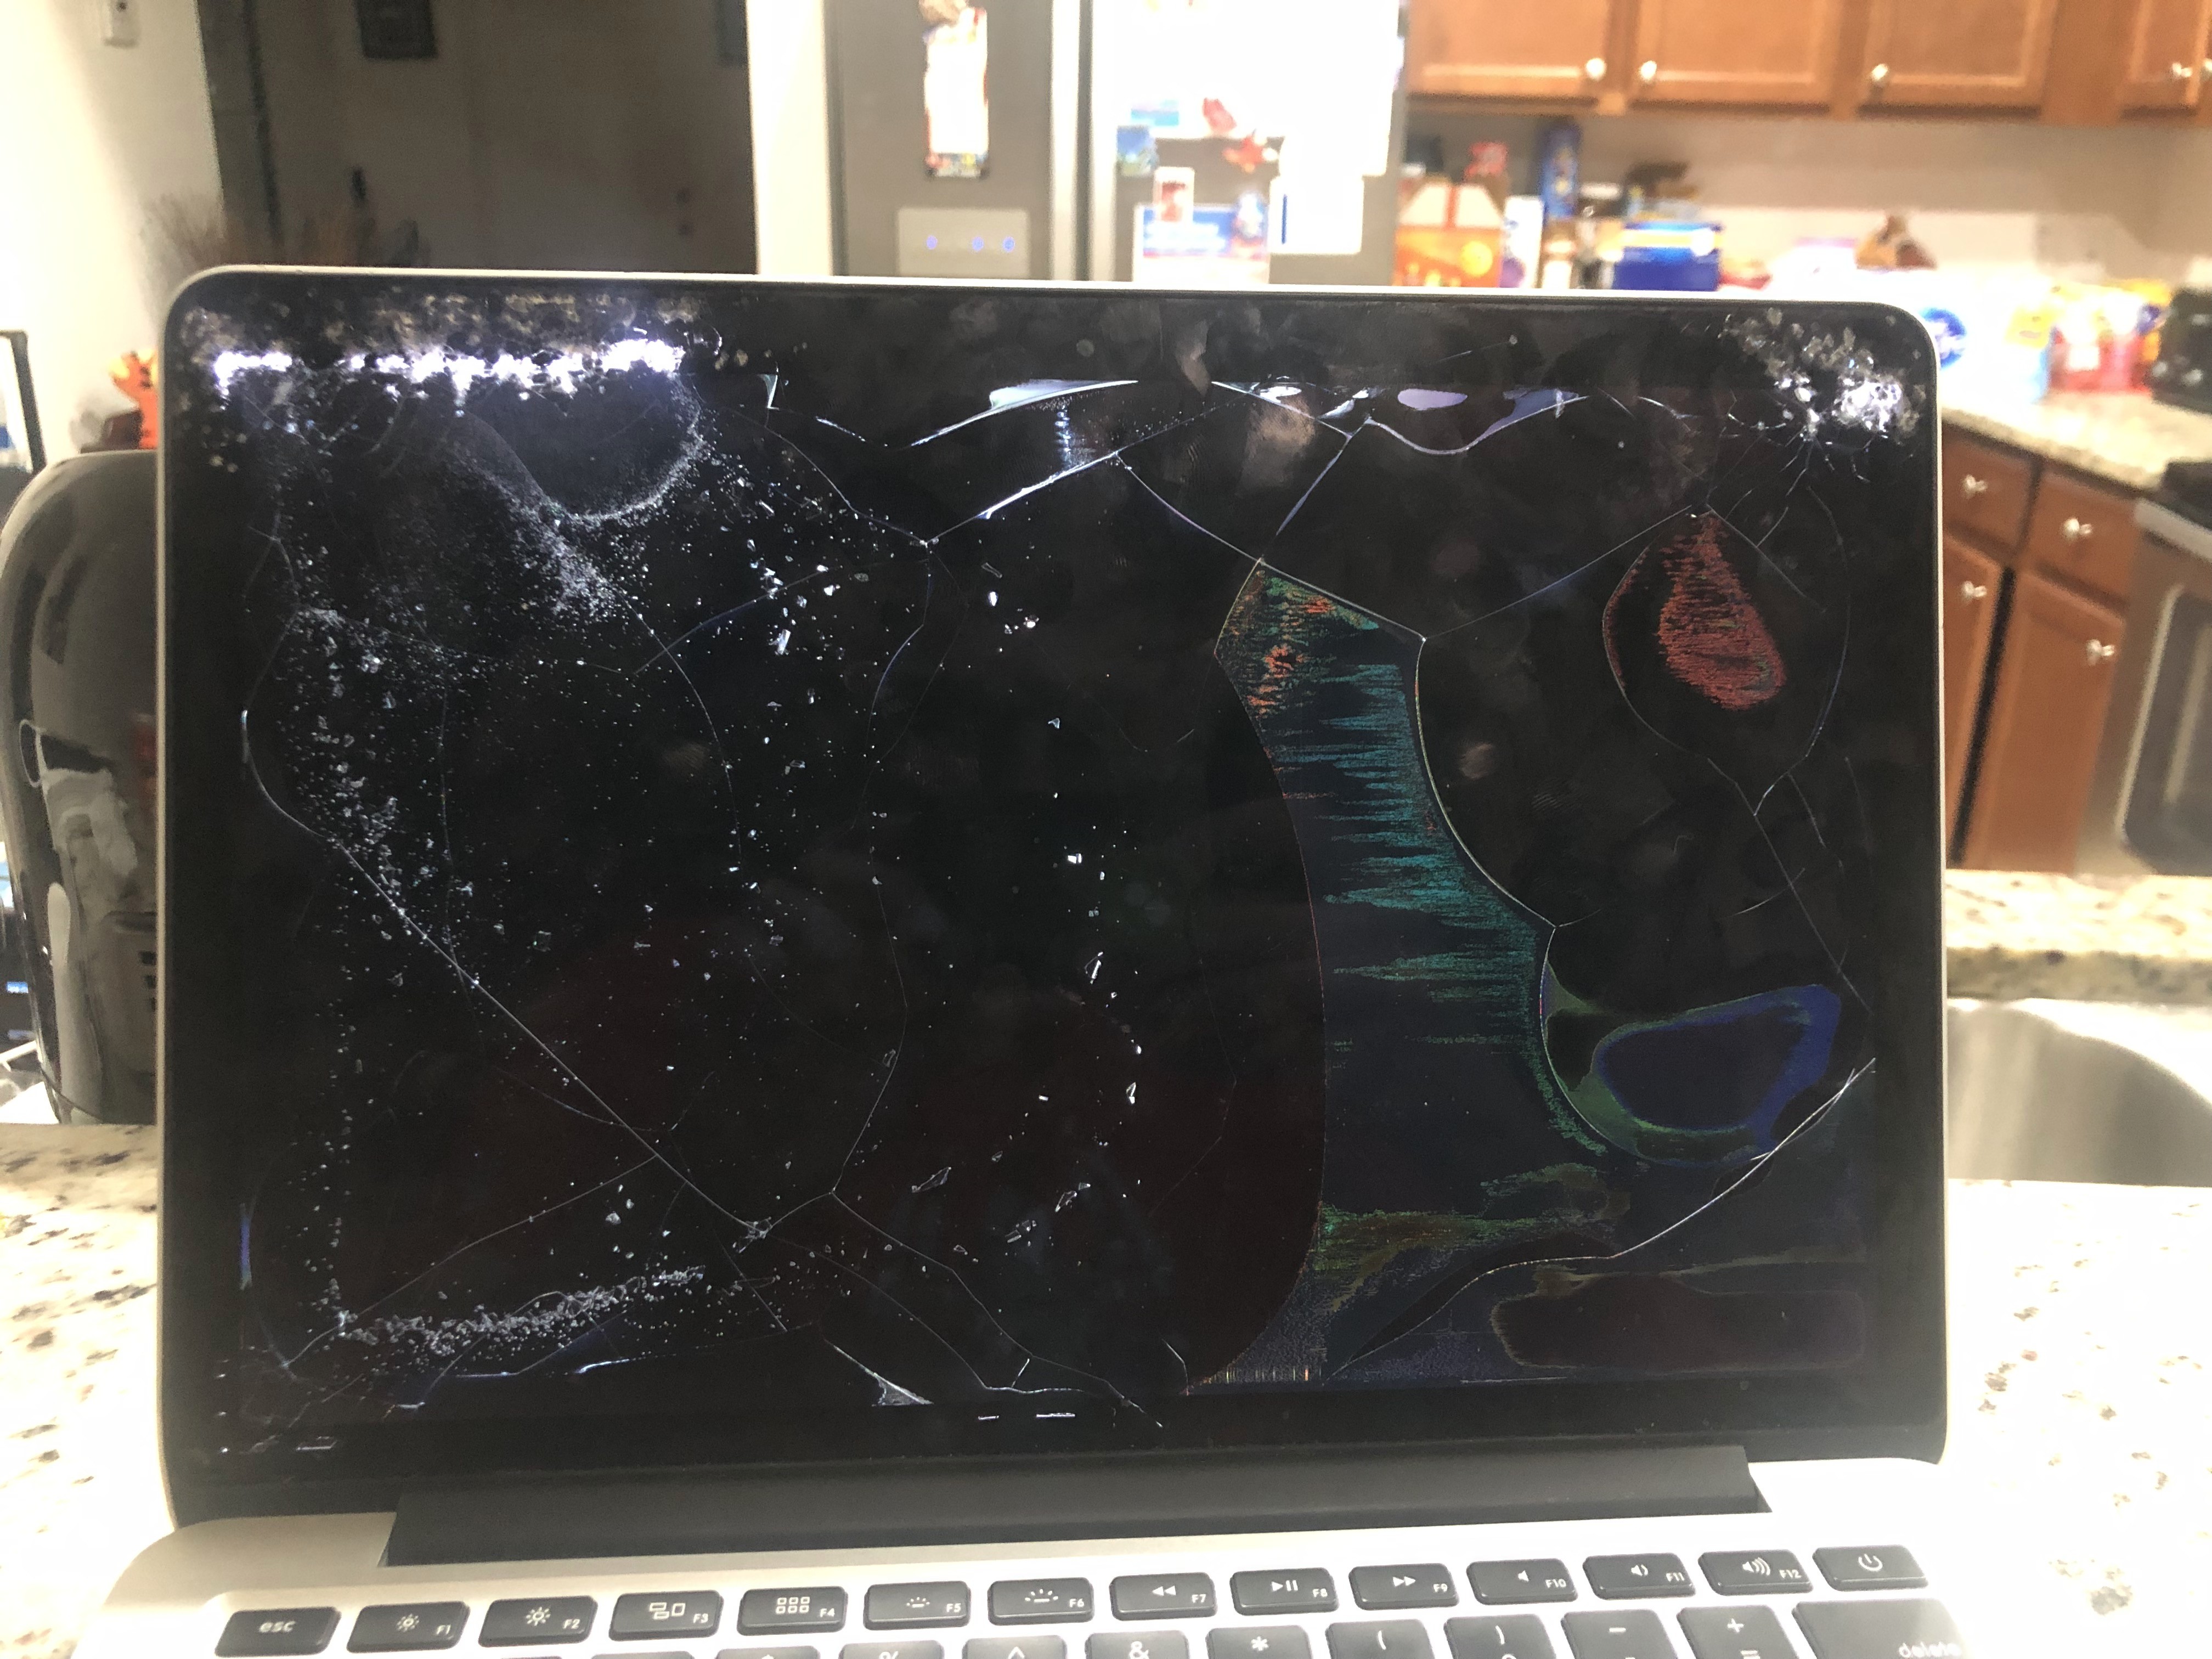 Macbook Pro Replacement Screen Mid 2018, How To Mirror Macbook With Broken Screen